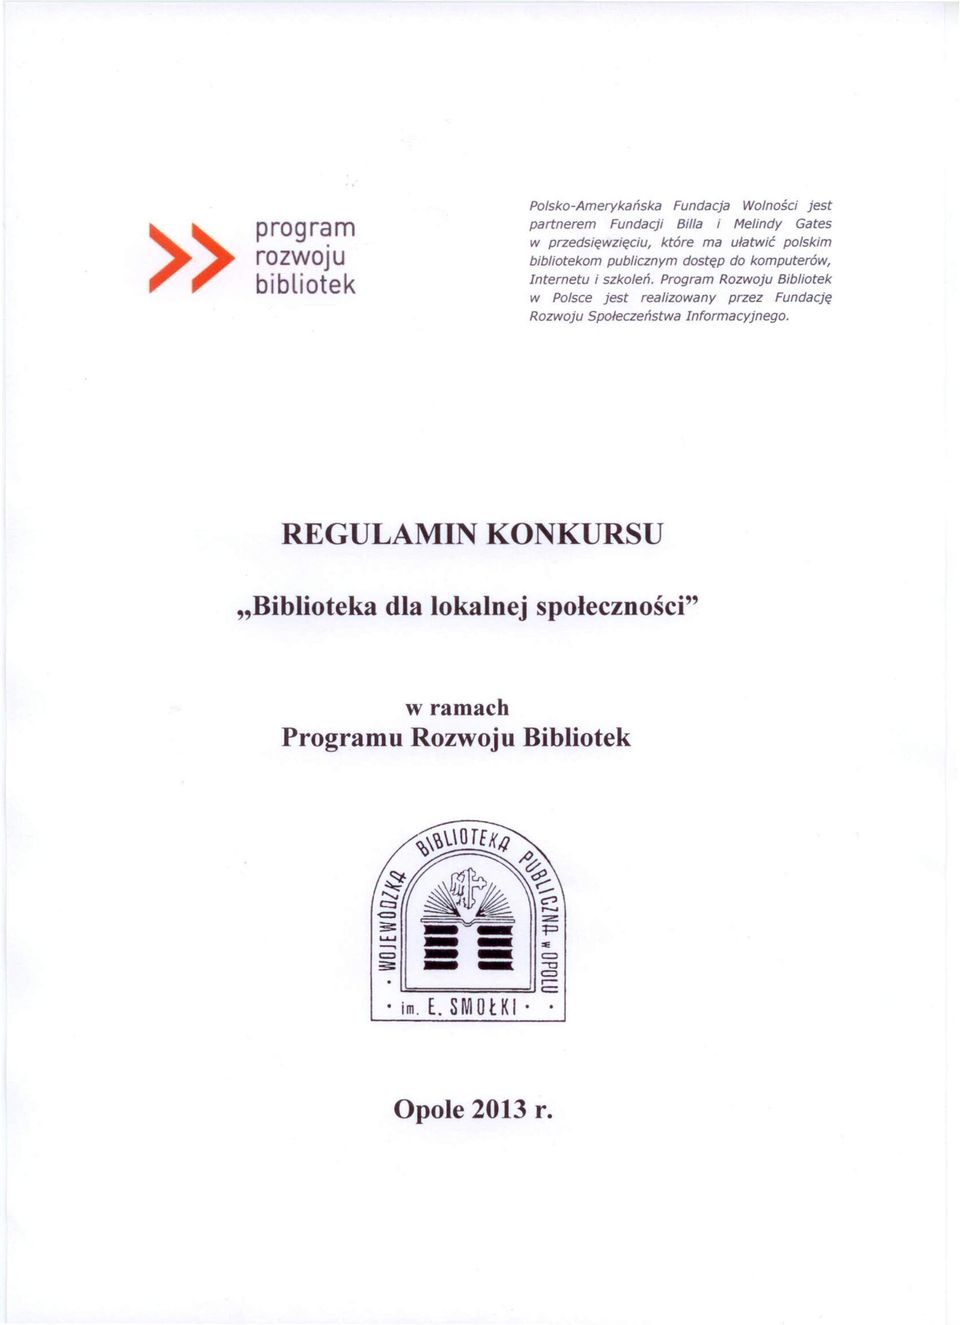 Program Rozwoju Bibliotek w Polsce jest realizowany przez Fundację Rozwoju Społeczeństwa Informacyjnego.